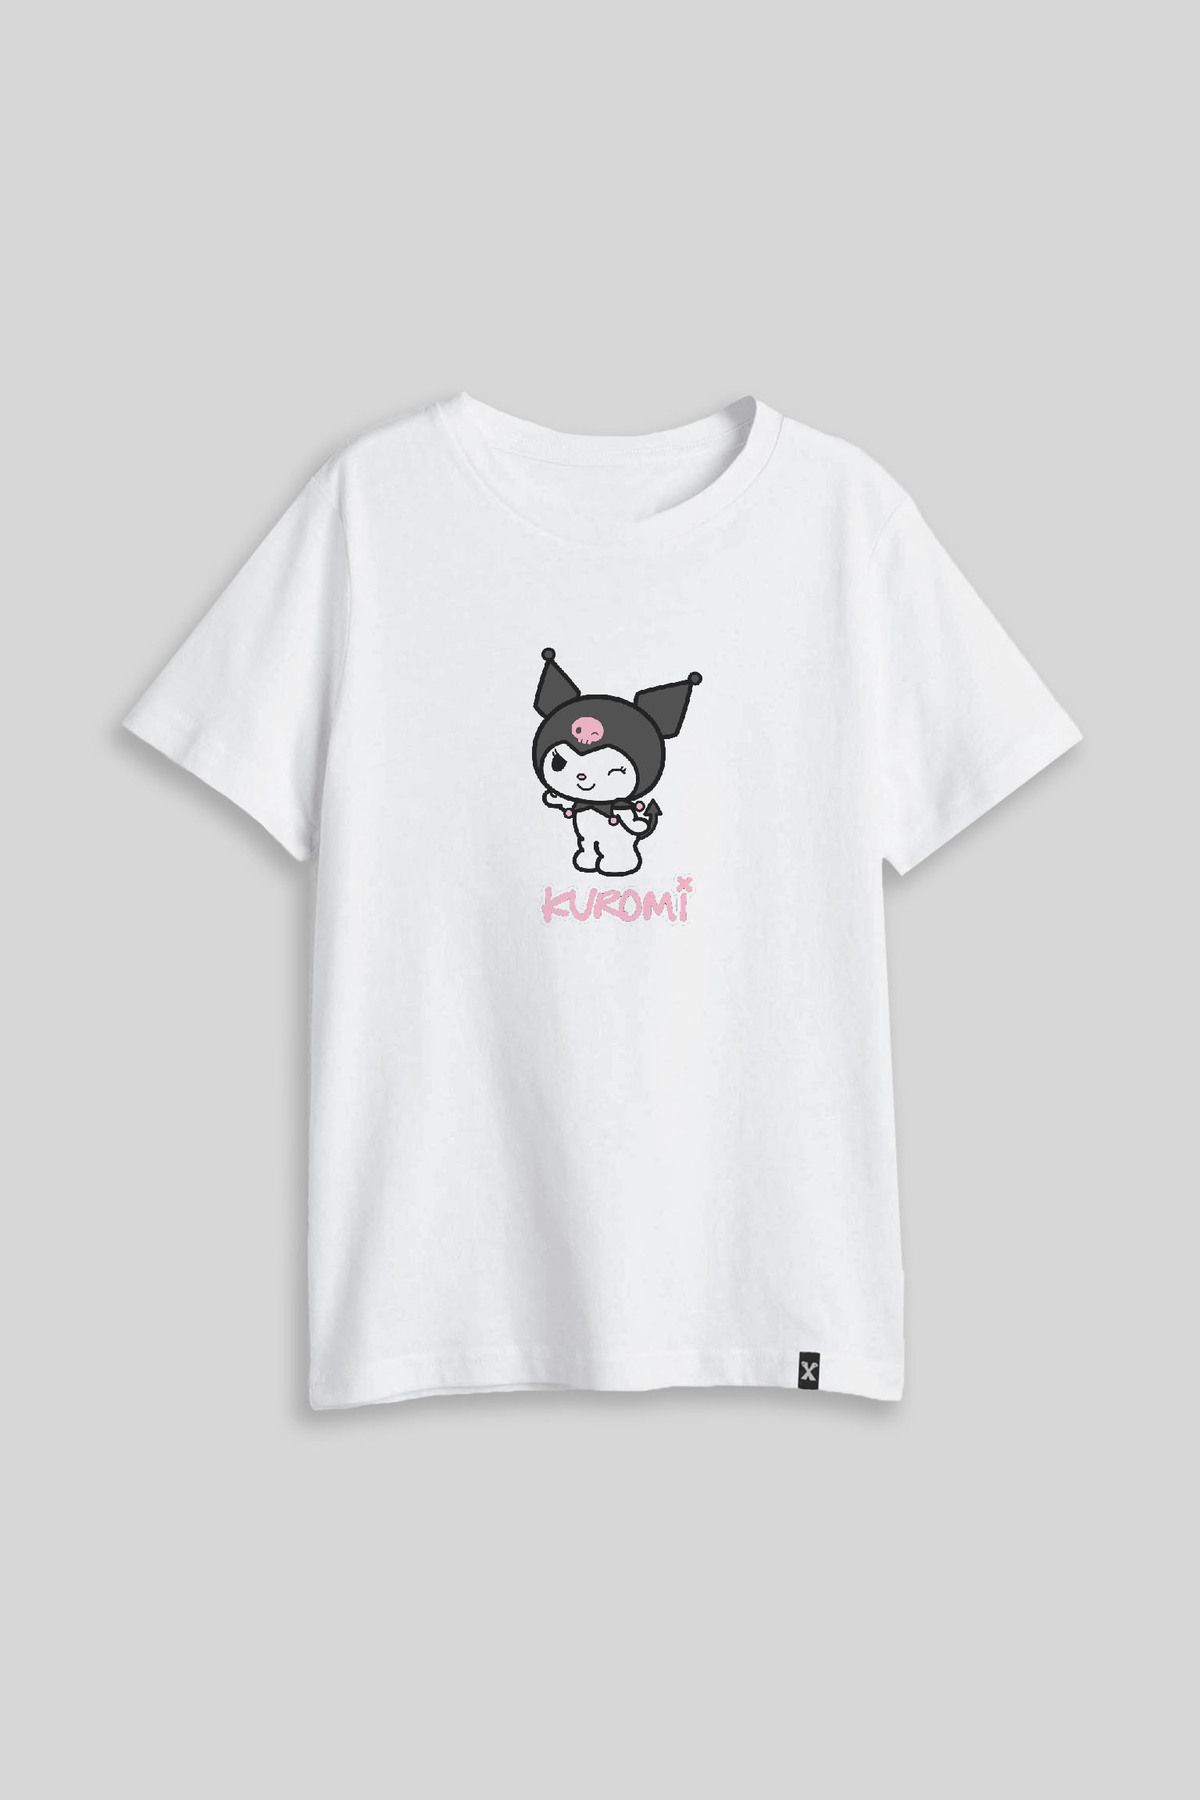 Darkia Hello Kitty Kuromi Özel Tasarım Baskılı Çocuk Tişört T-shirt